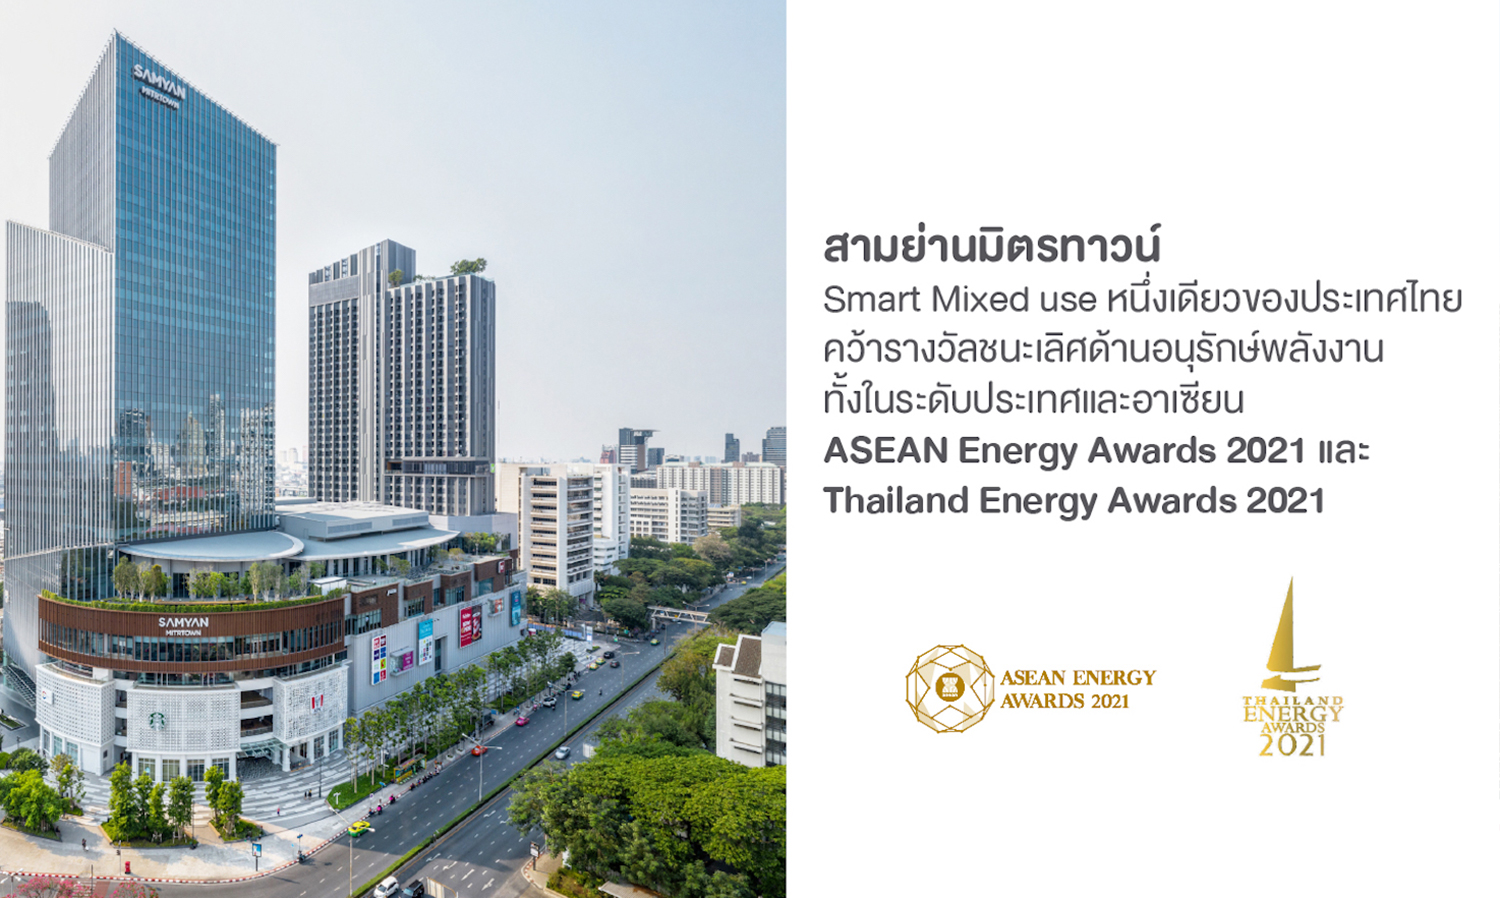 สามย่านมิตรทาวน์ Smart Mixed-use หนึ่งเดียวของประเทศไทย กวาดรางวัลชนะเลิศด้านอนุรักษ์พลังงานทั้งในระดับประเทศและอาเซียนประจำปี 2564